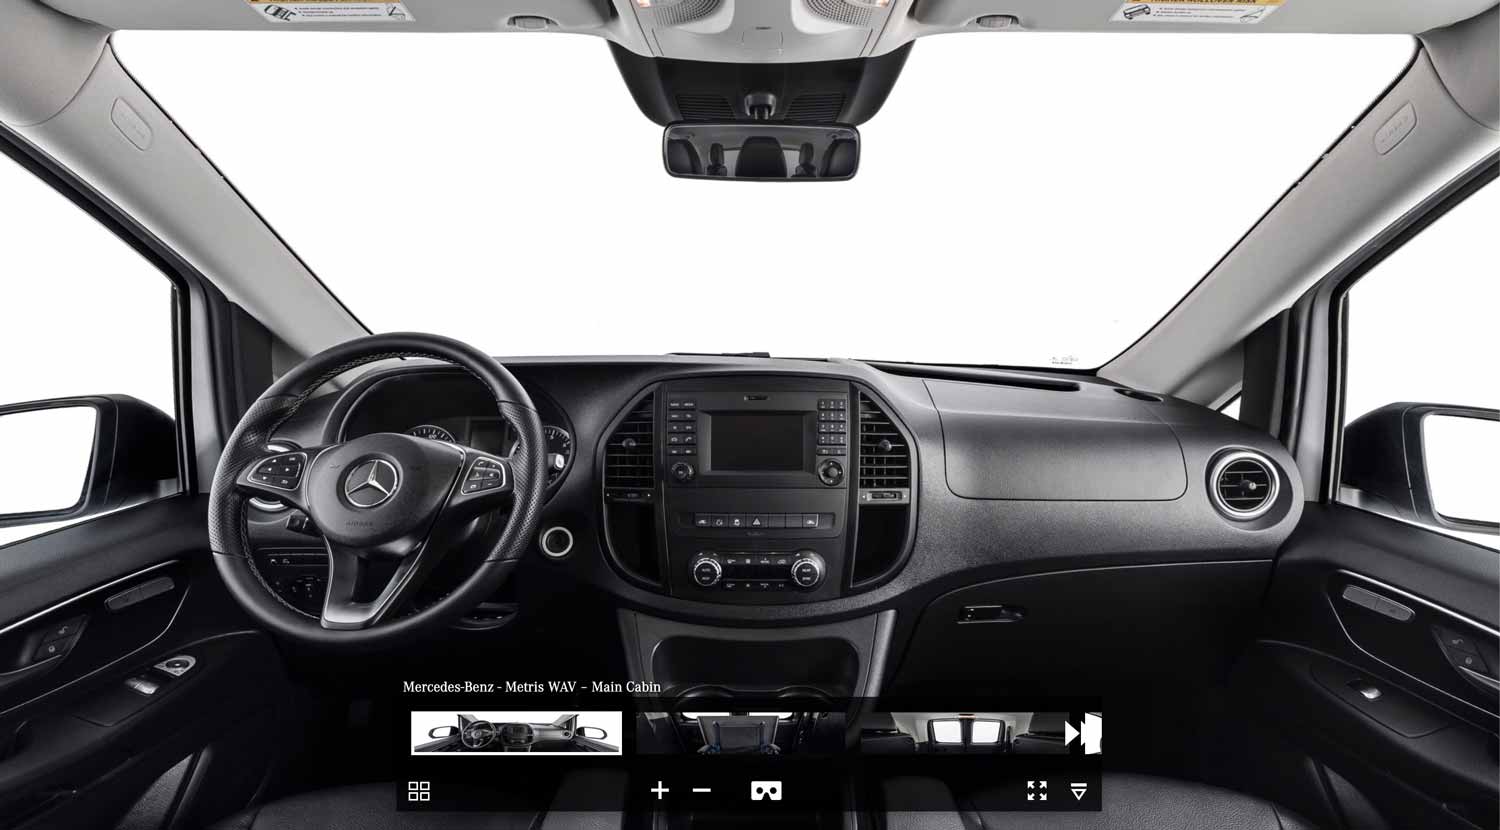 Mercedes Benz Metris Interior 360 Tour – Virtual Media 360